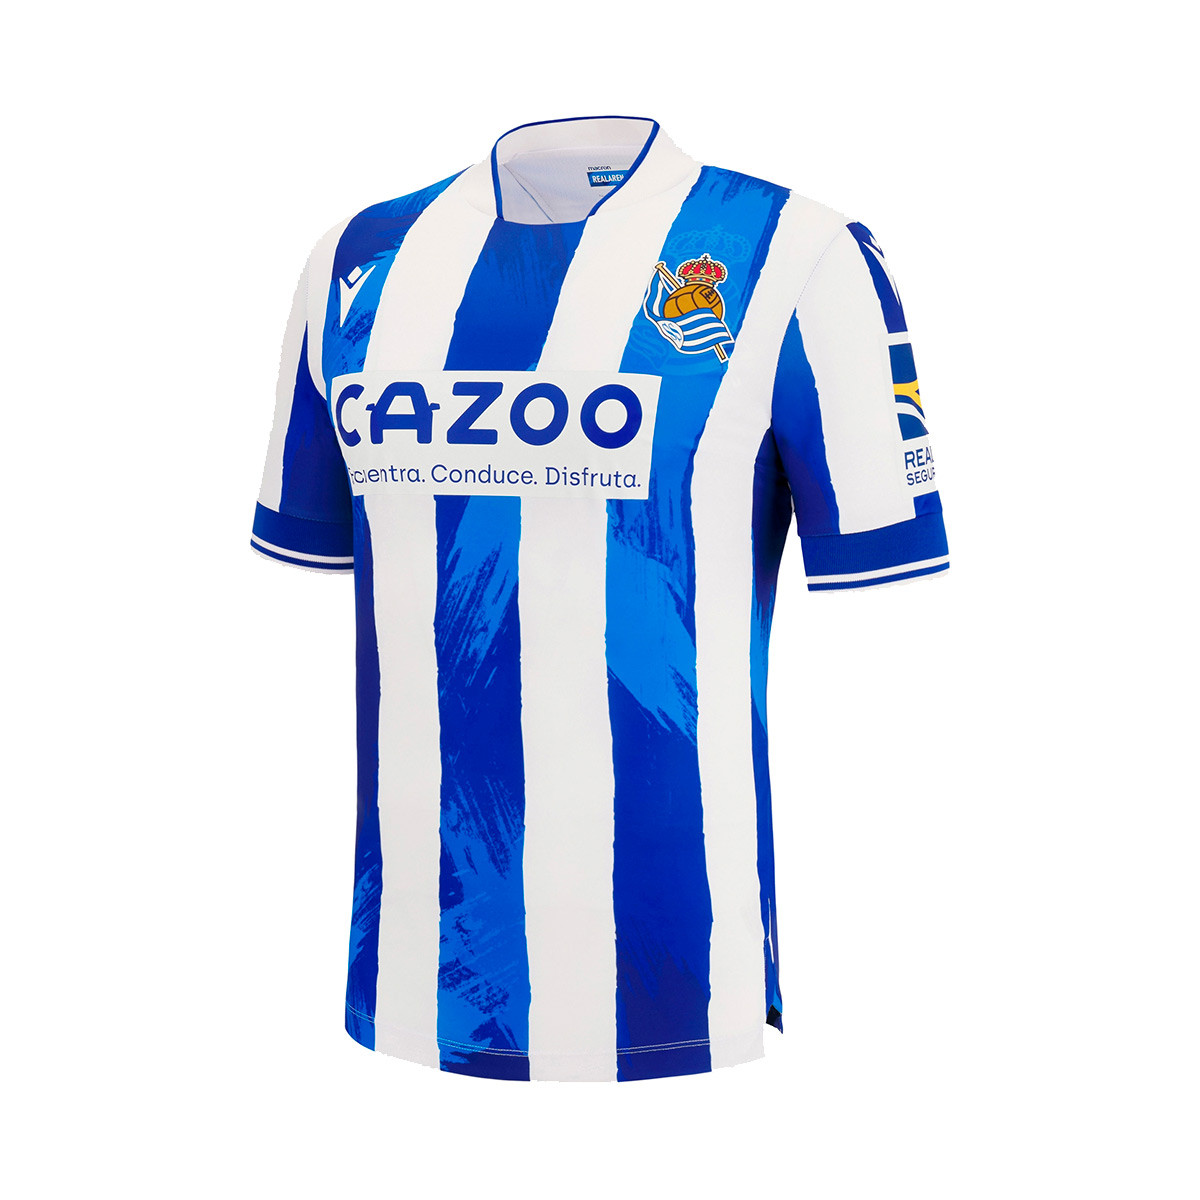 Camisa Oficial del Club Real Sociedad Talla L Camiseta Deportiva Temporada 2021-22 Softblock |Berenjena Equipación visitante 